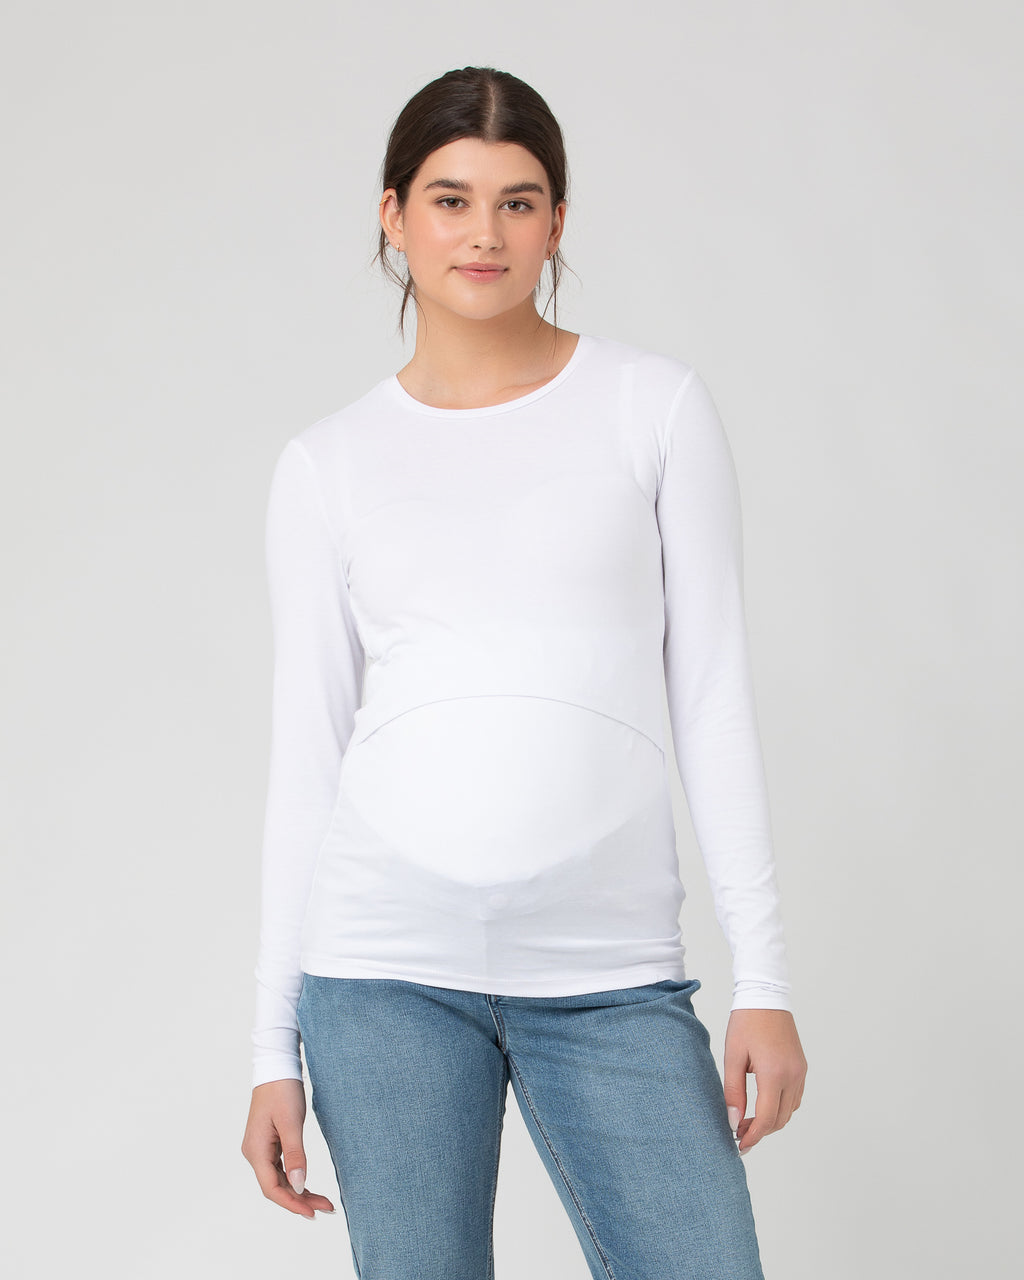 Girls' warm organic cotton long-sleeve crew neck top, white, Kids'  Underwear